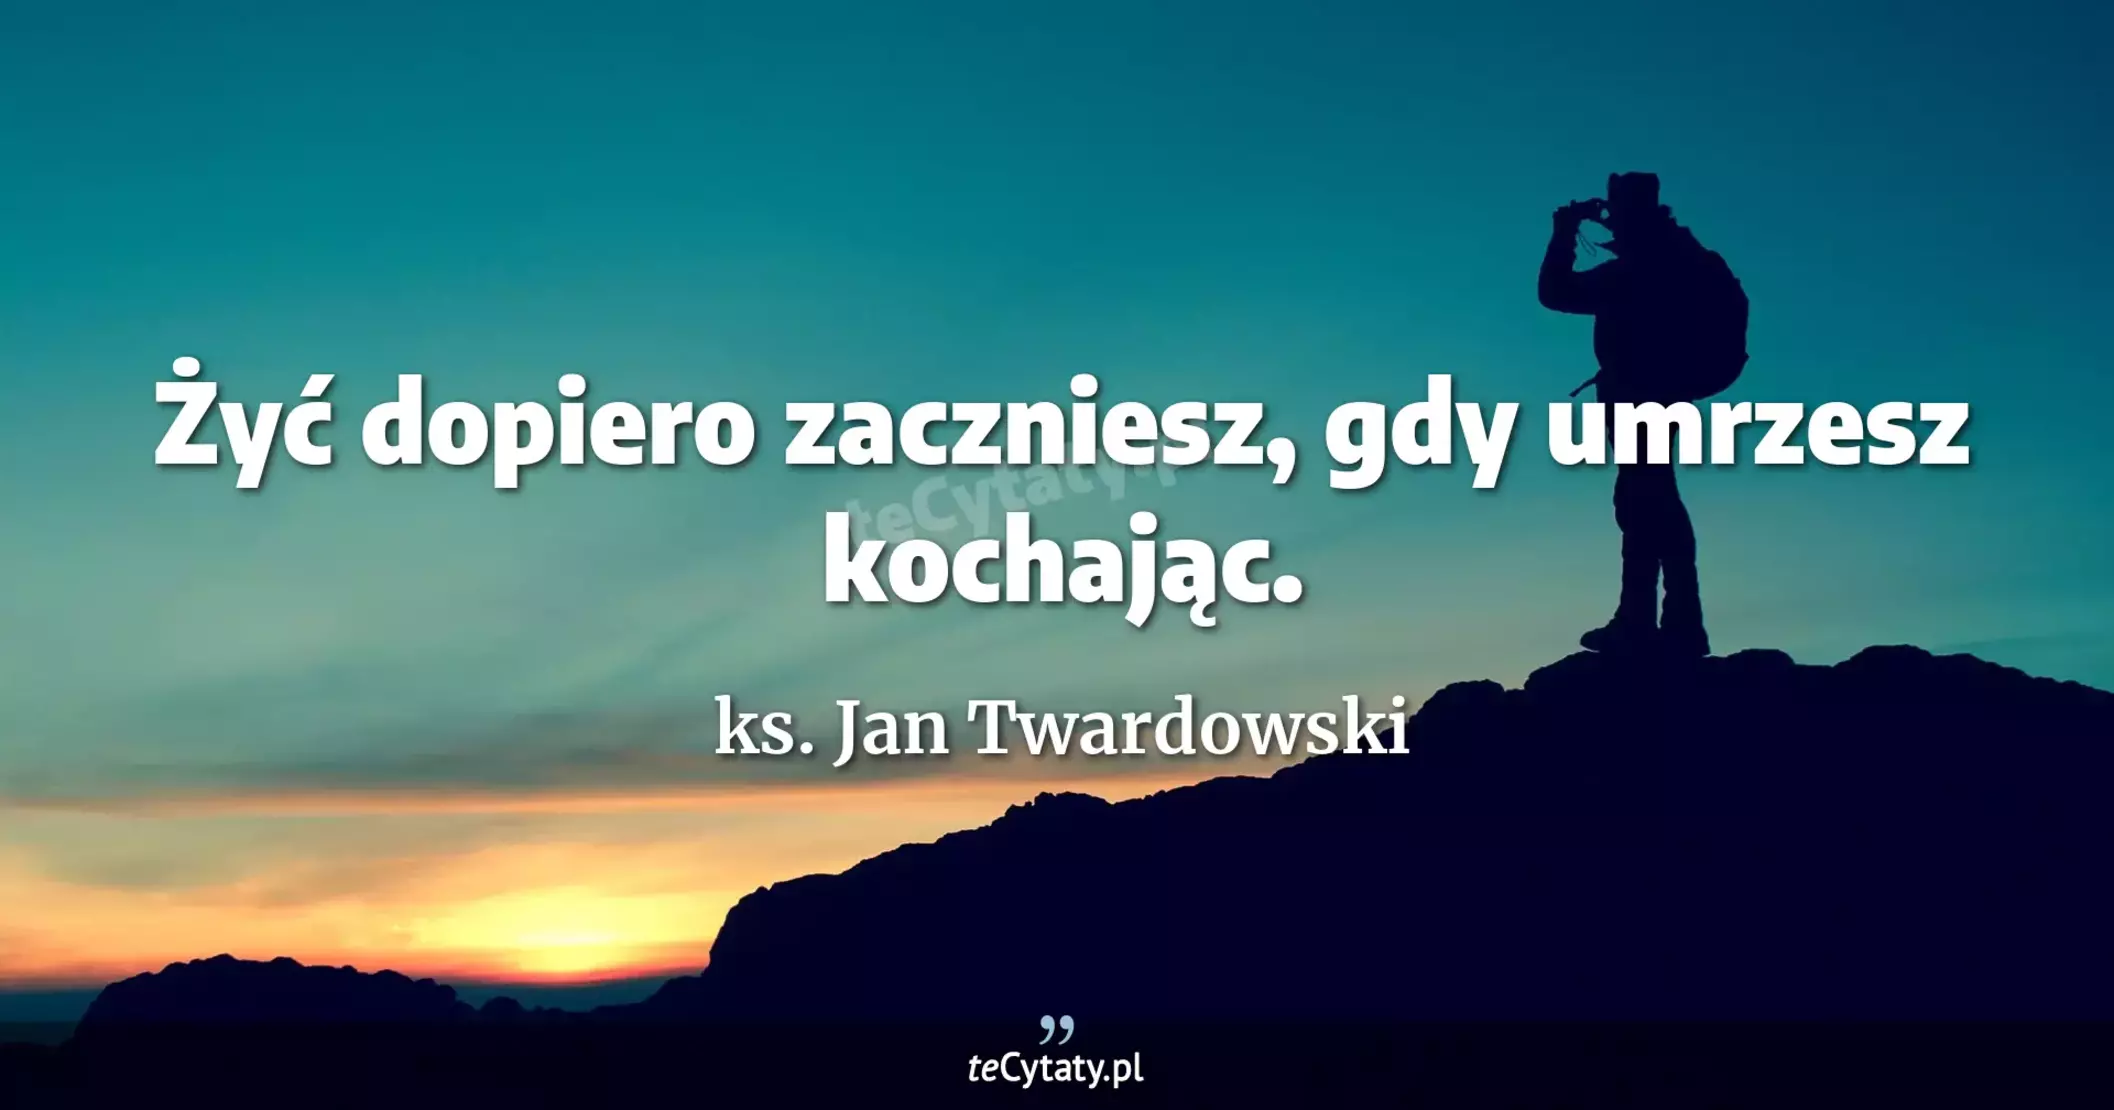 Żyć dopiero zaczniesz, gdy umrzesz kochając. - ks. Jan Twardowski